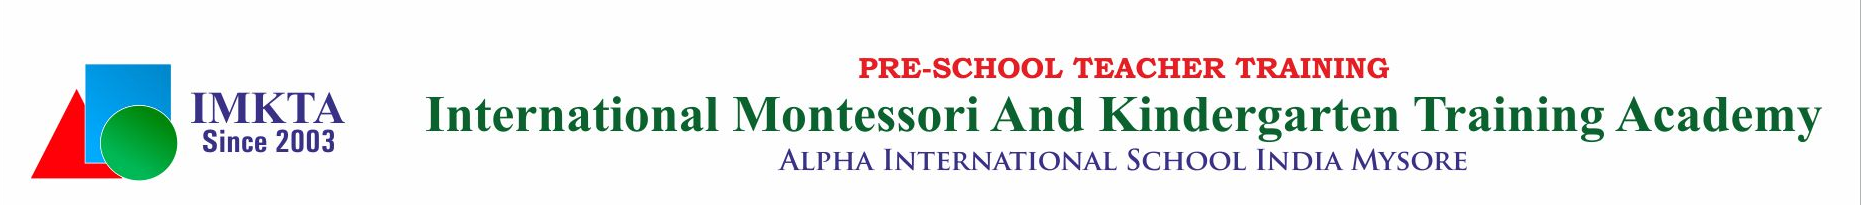 SSET School Website